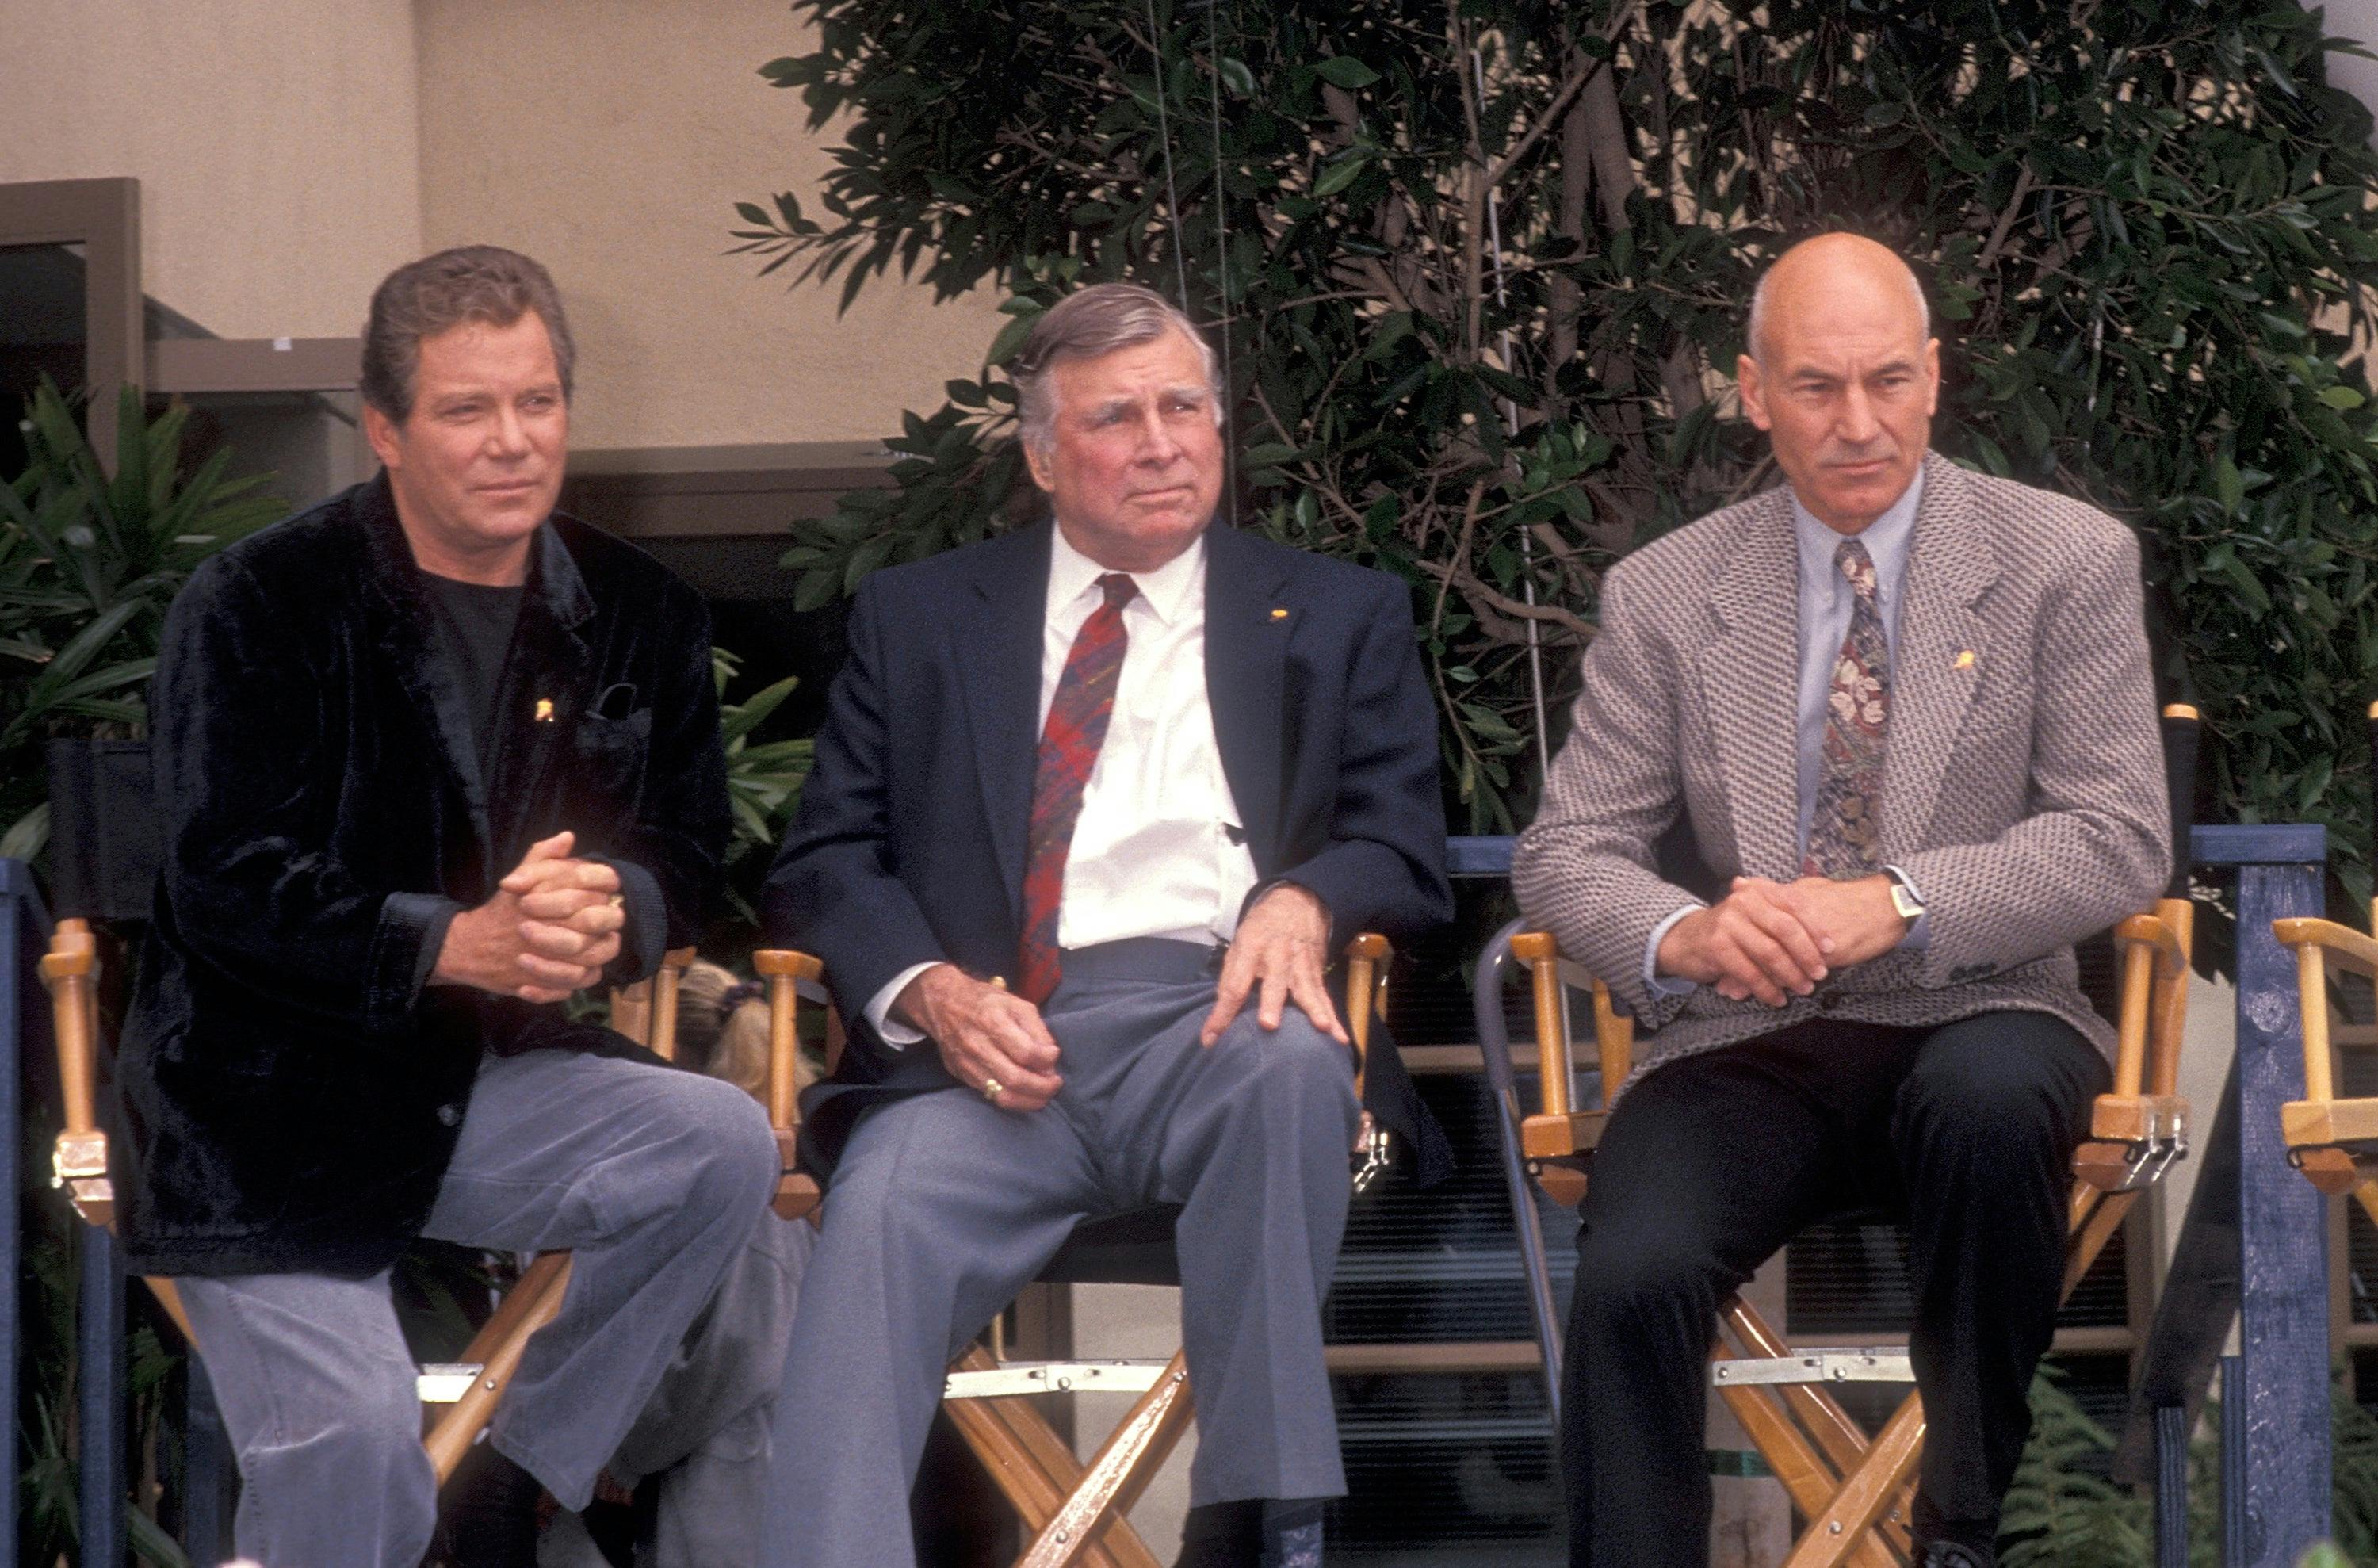 William Shatner, Gene Roddenberry and Patrick Stewart attend the 